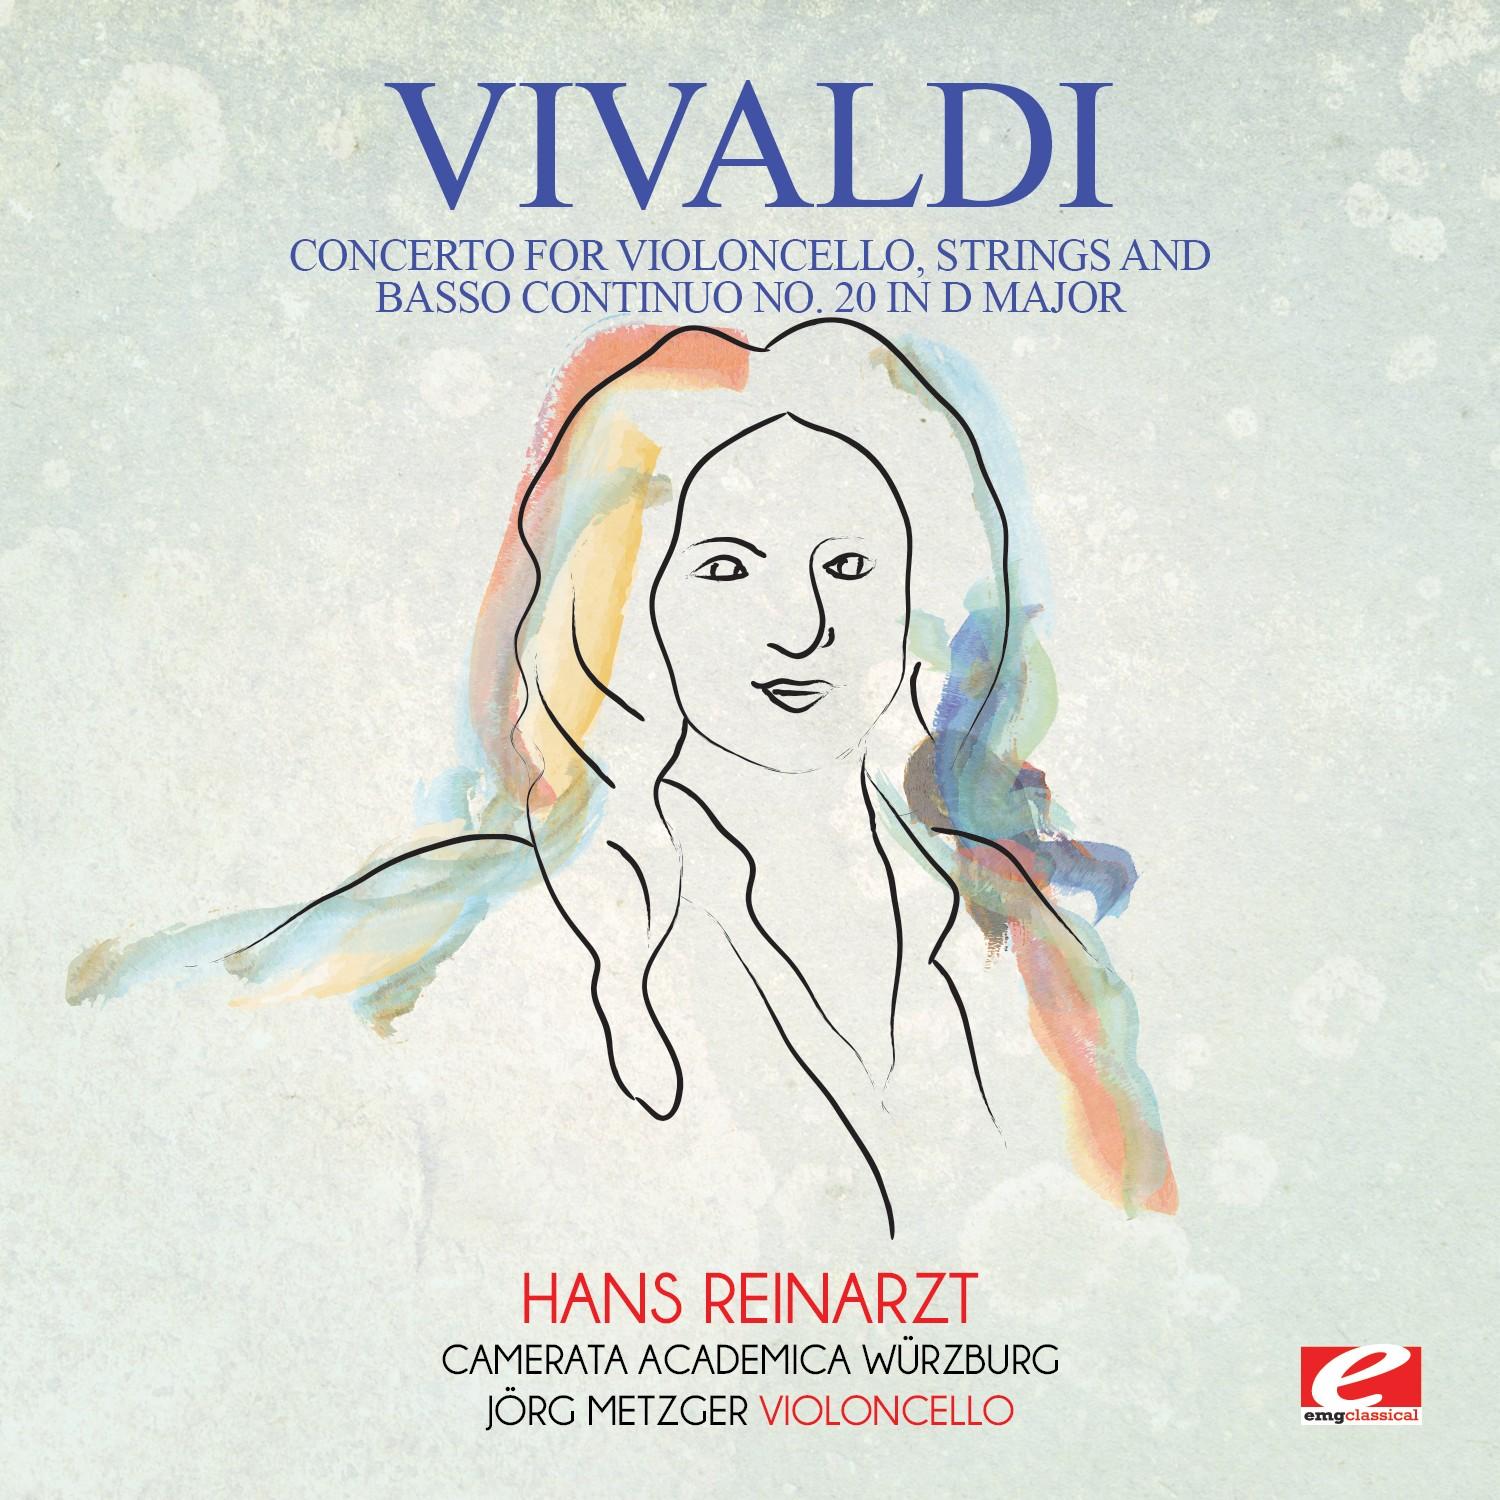 Concerto for Violoncello, Strings and Basso Continuo No. 20 in D Major: I. Allegro